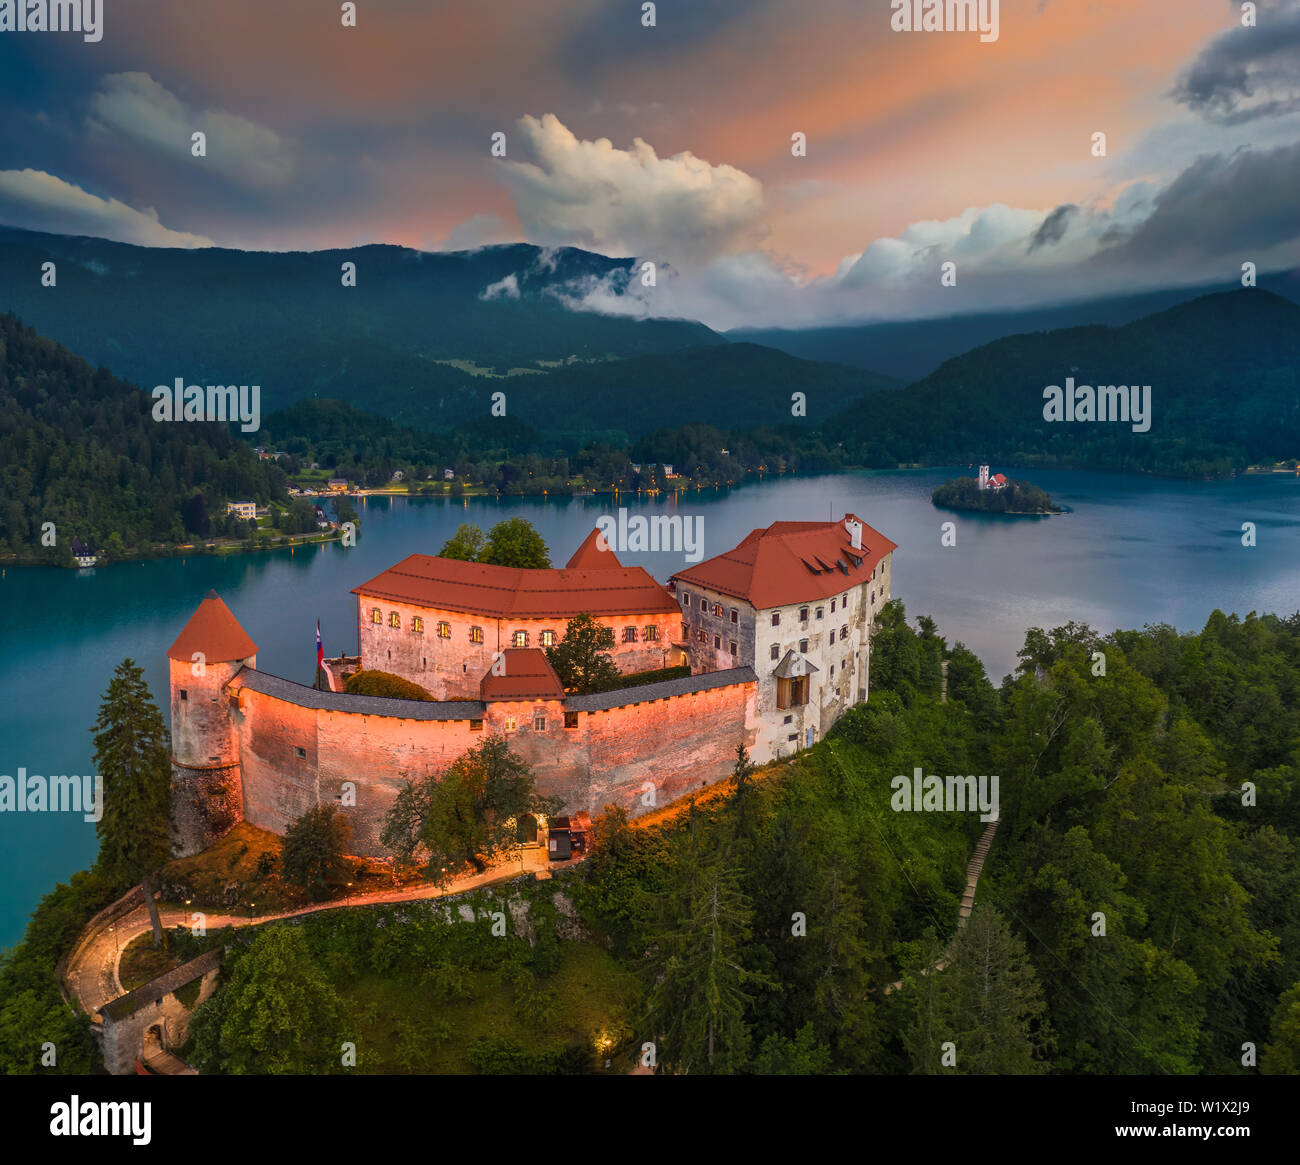 Bled, Slowenien - Luftaufnahme von wunderschön beleuchtete Burg von Bled (Blejski Grad) mit der Kirche der Himmelfahrt der Maria und Julian Alps von backgro Stockfoto